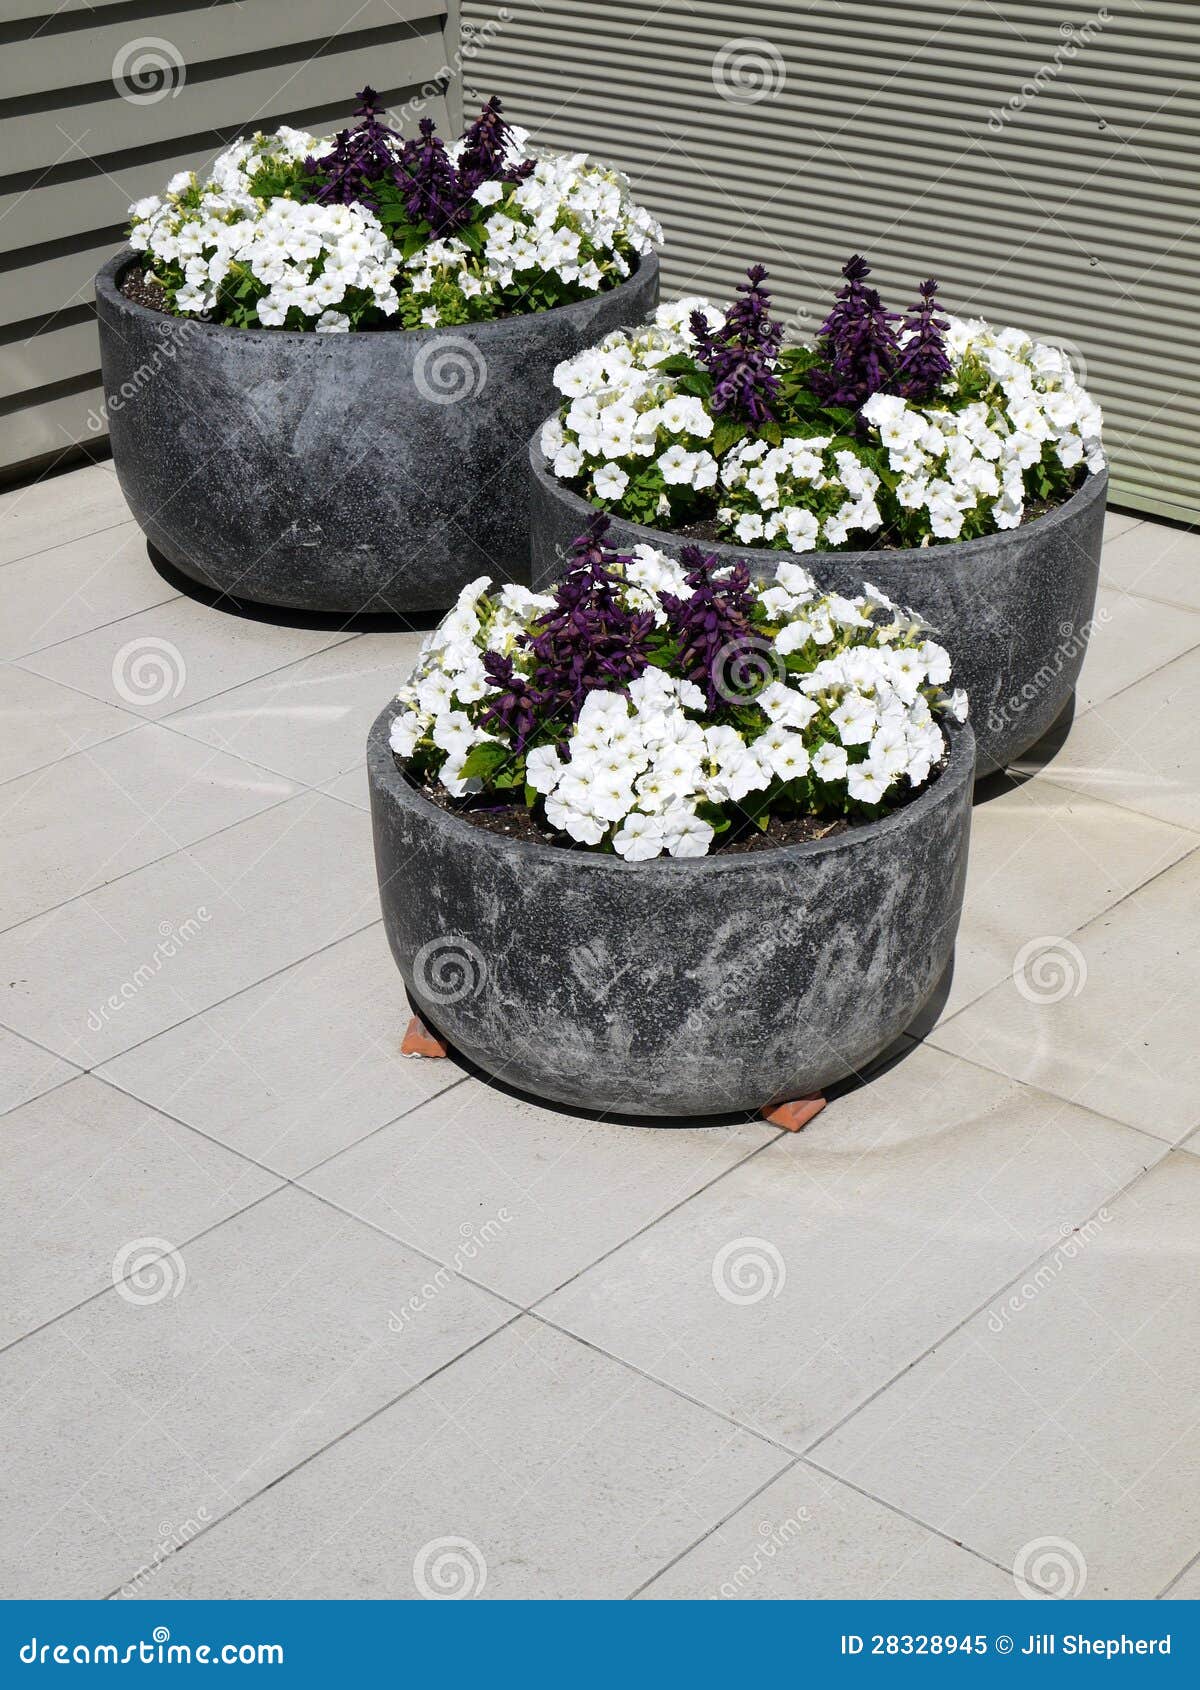 modern garden: three planters white petunias